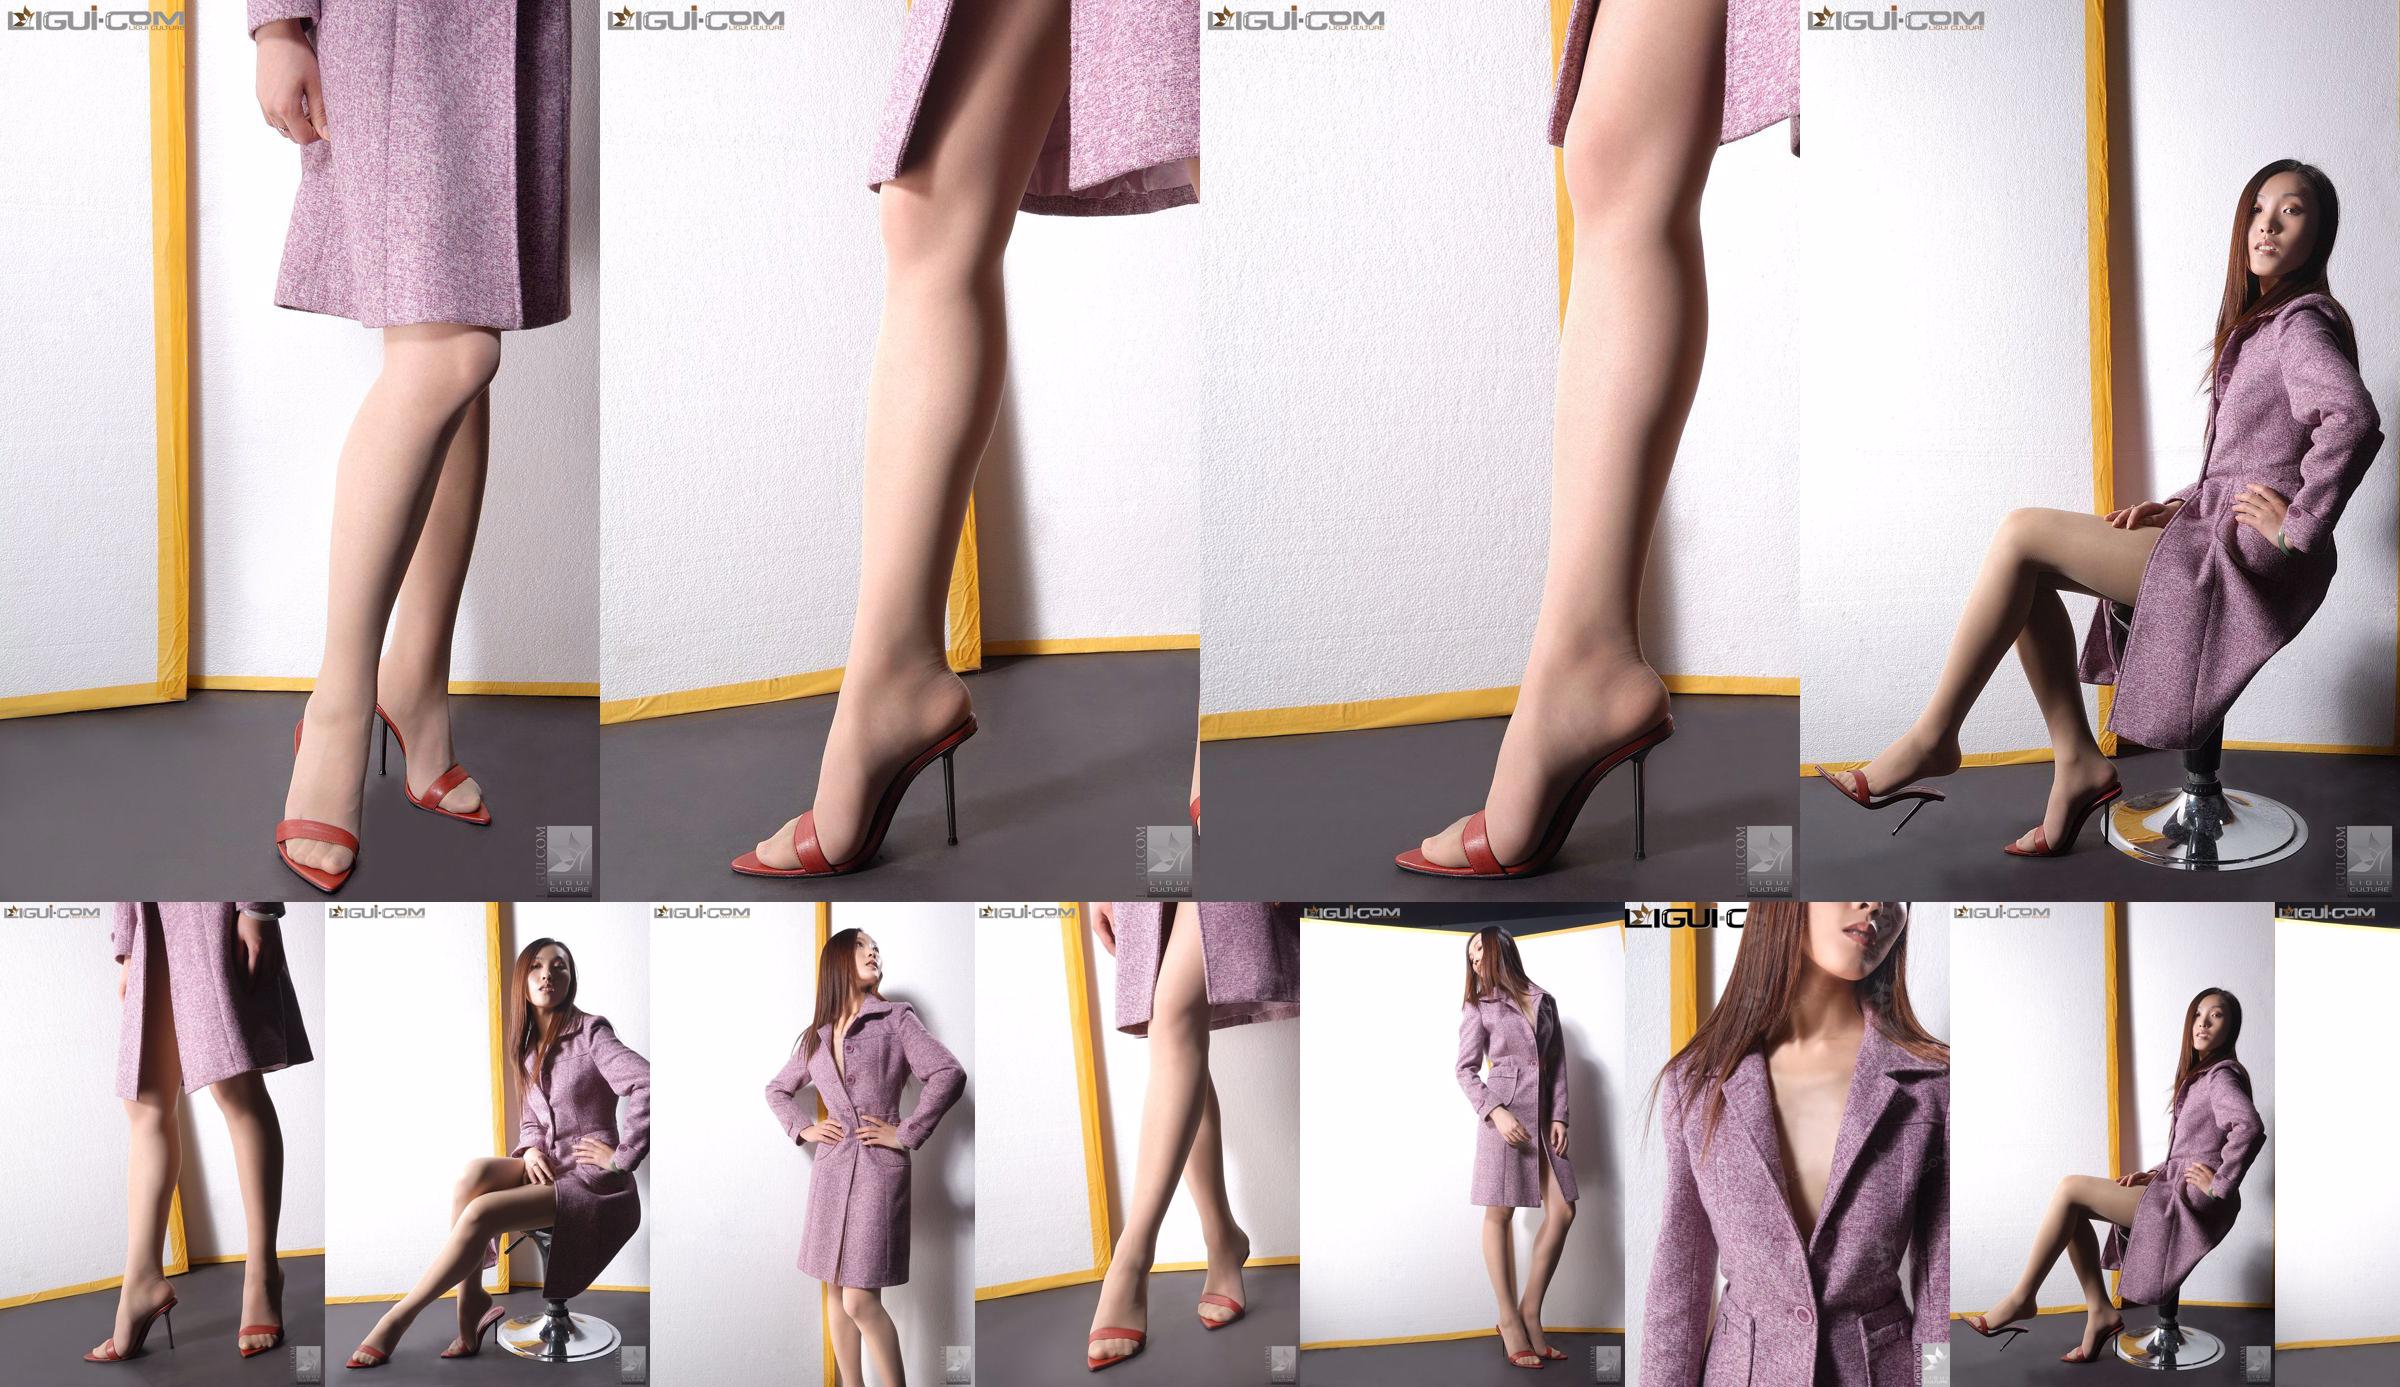 Модель Чжан Ай "Юная девушка на высоких каблуках" [Ligui LiGui] Фото красивых ног и ступней No.9633c7 Страница 1